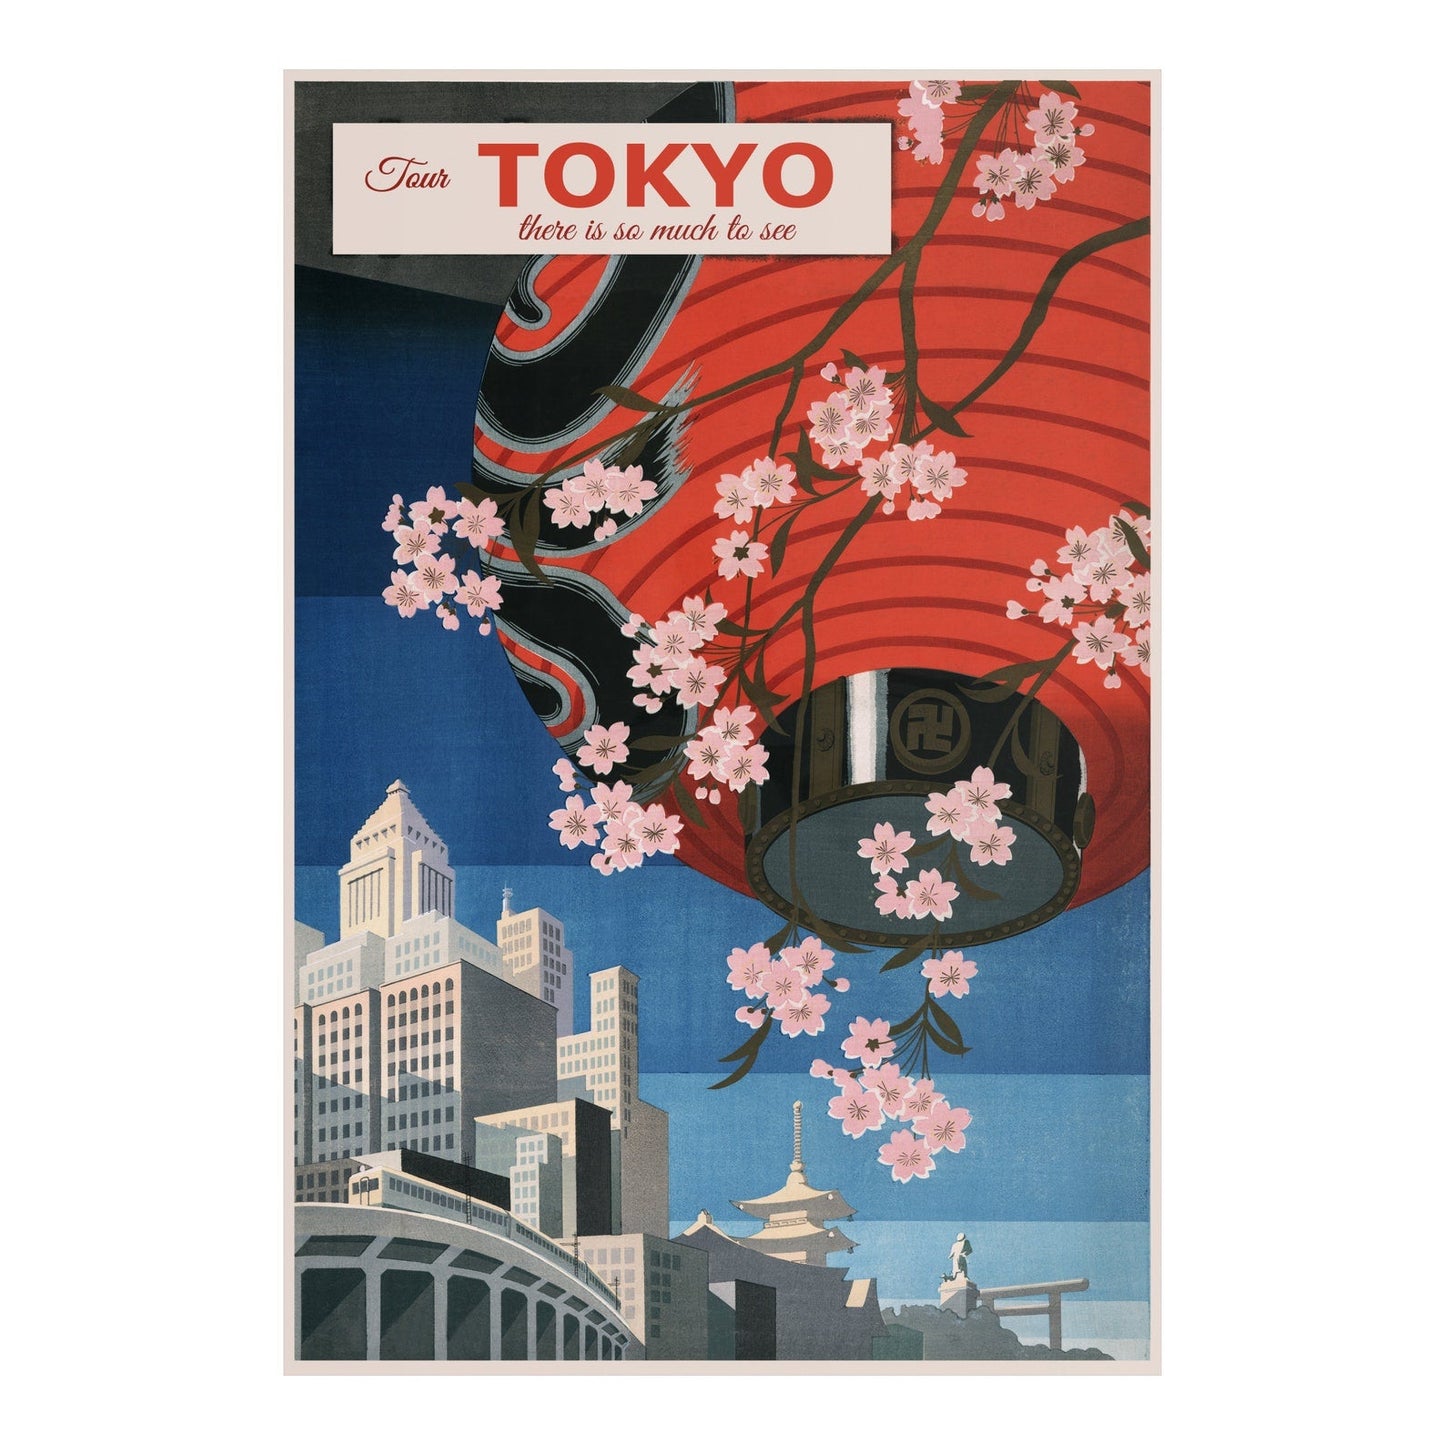 Tour Tokyo - Affiche de voyage vintage au Japon